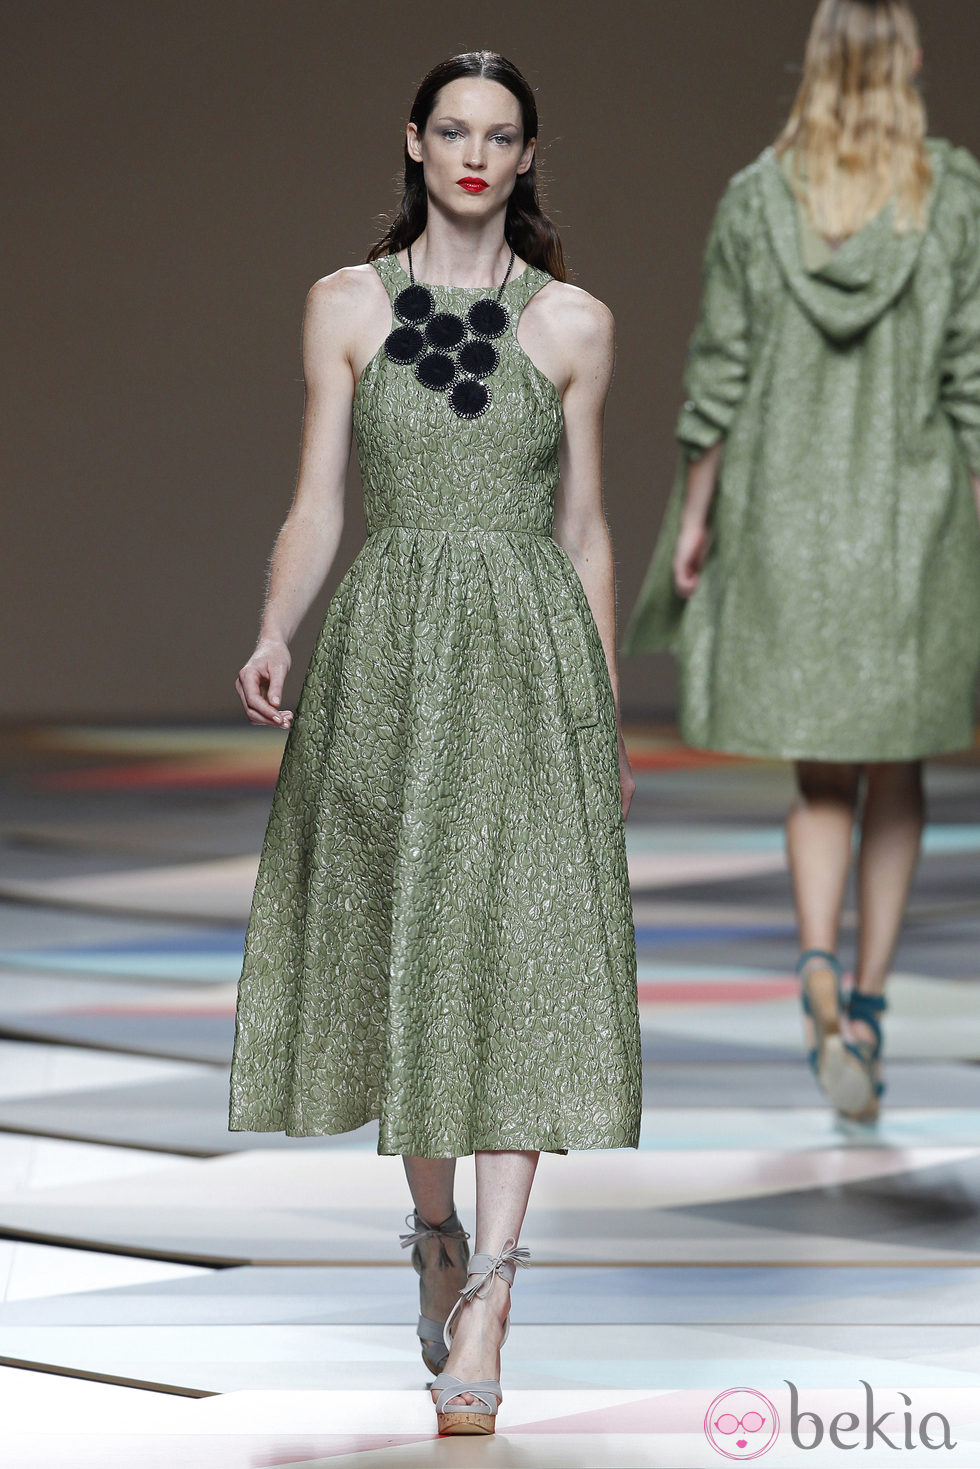 Vestido verde de la colección primavera/verano 2014 de Ailanto en Madrid Fashion Week